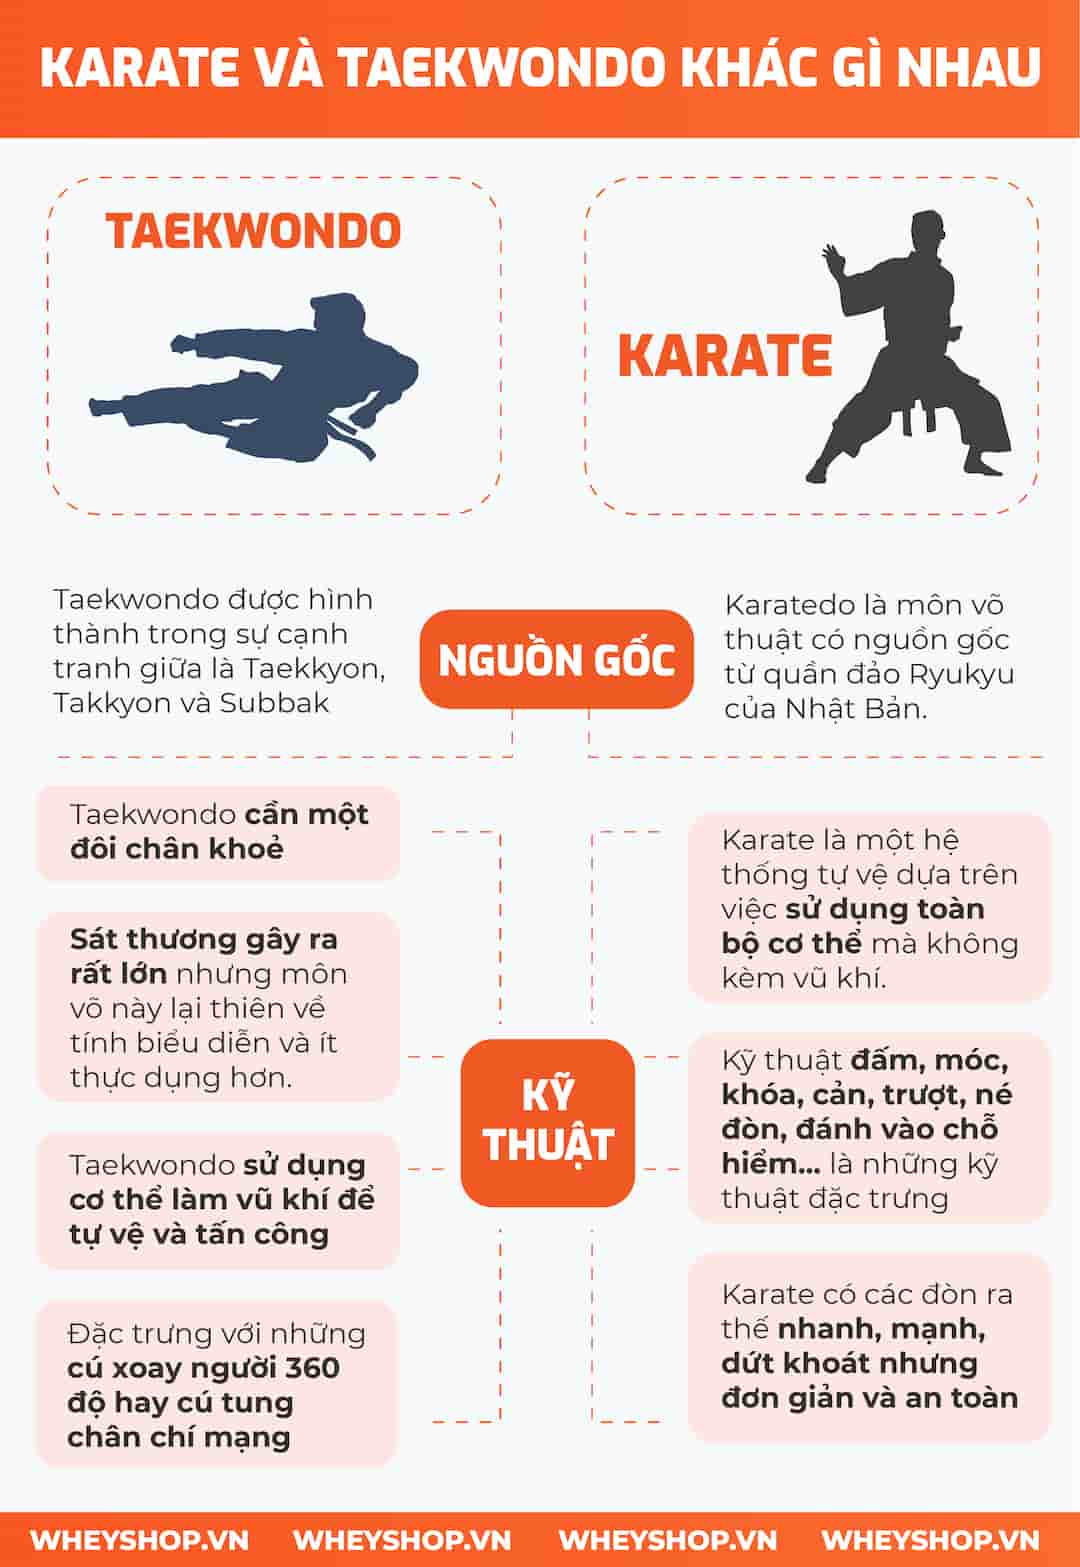 Sự khác nhau giữa Karate và Taekwondo